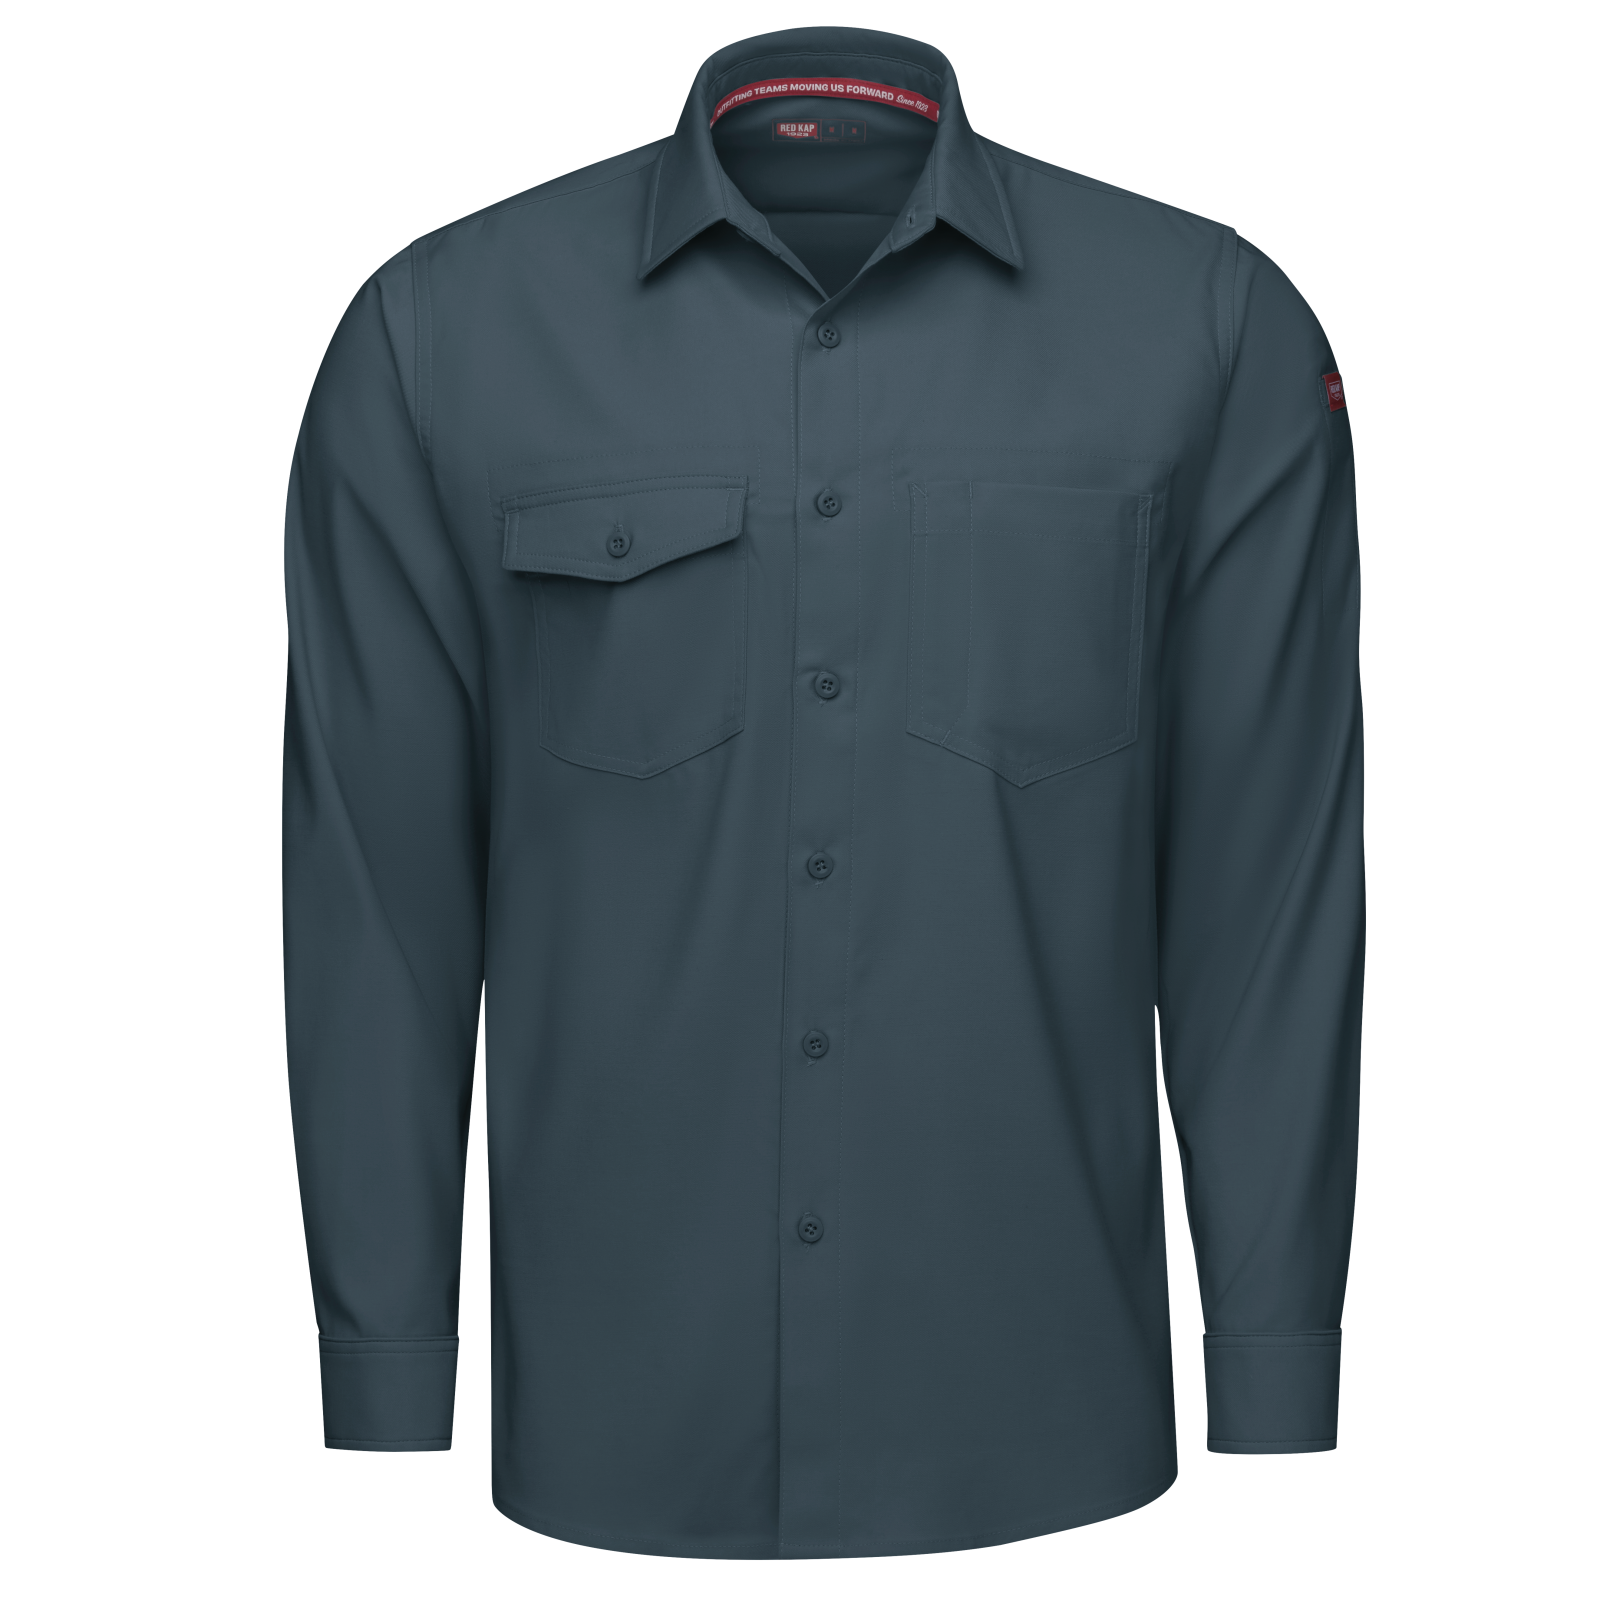 Cooling Long Sleeve Work Shirt | Red Kap®